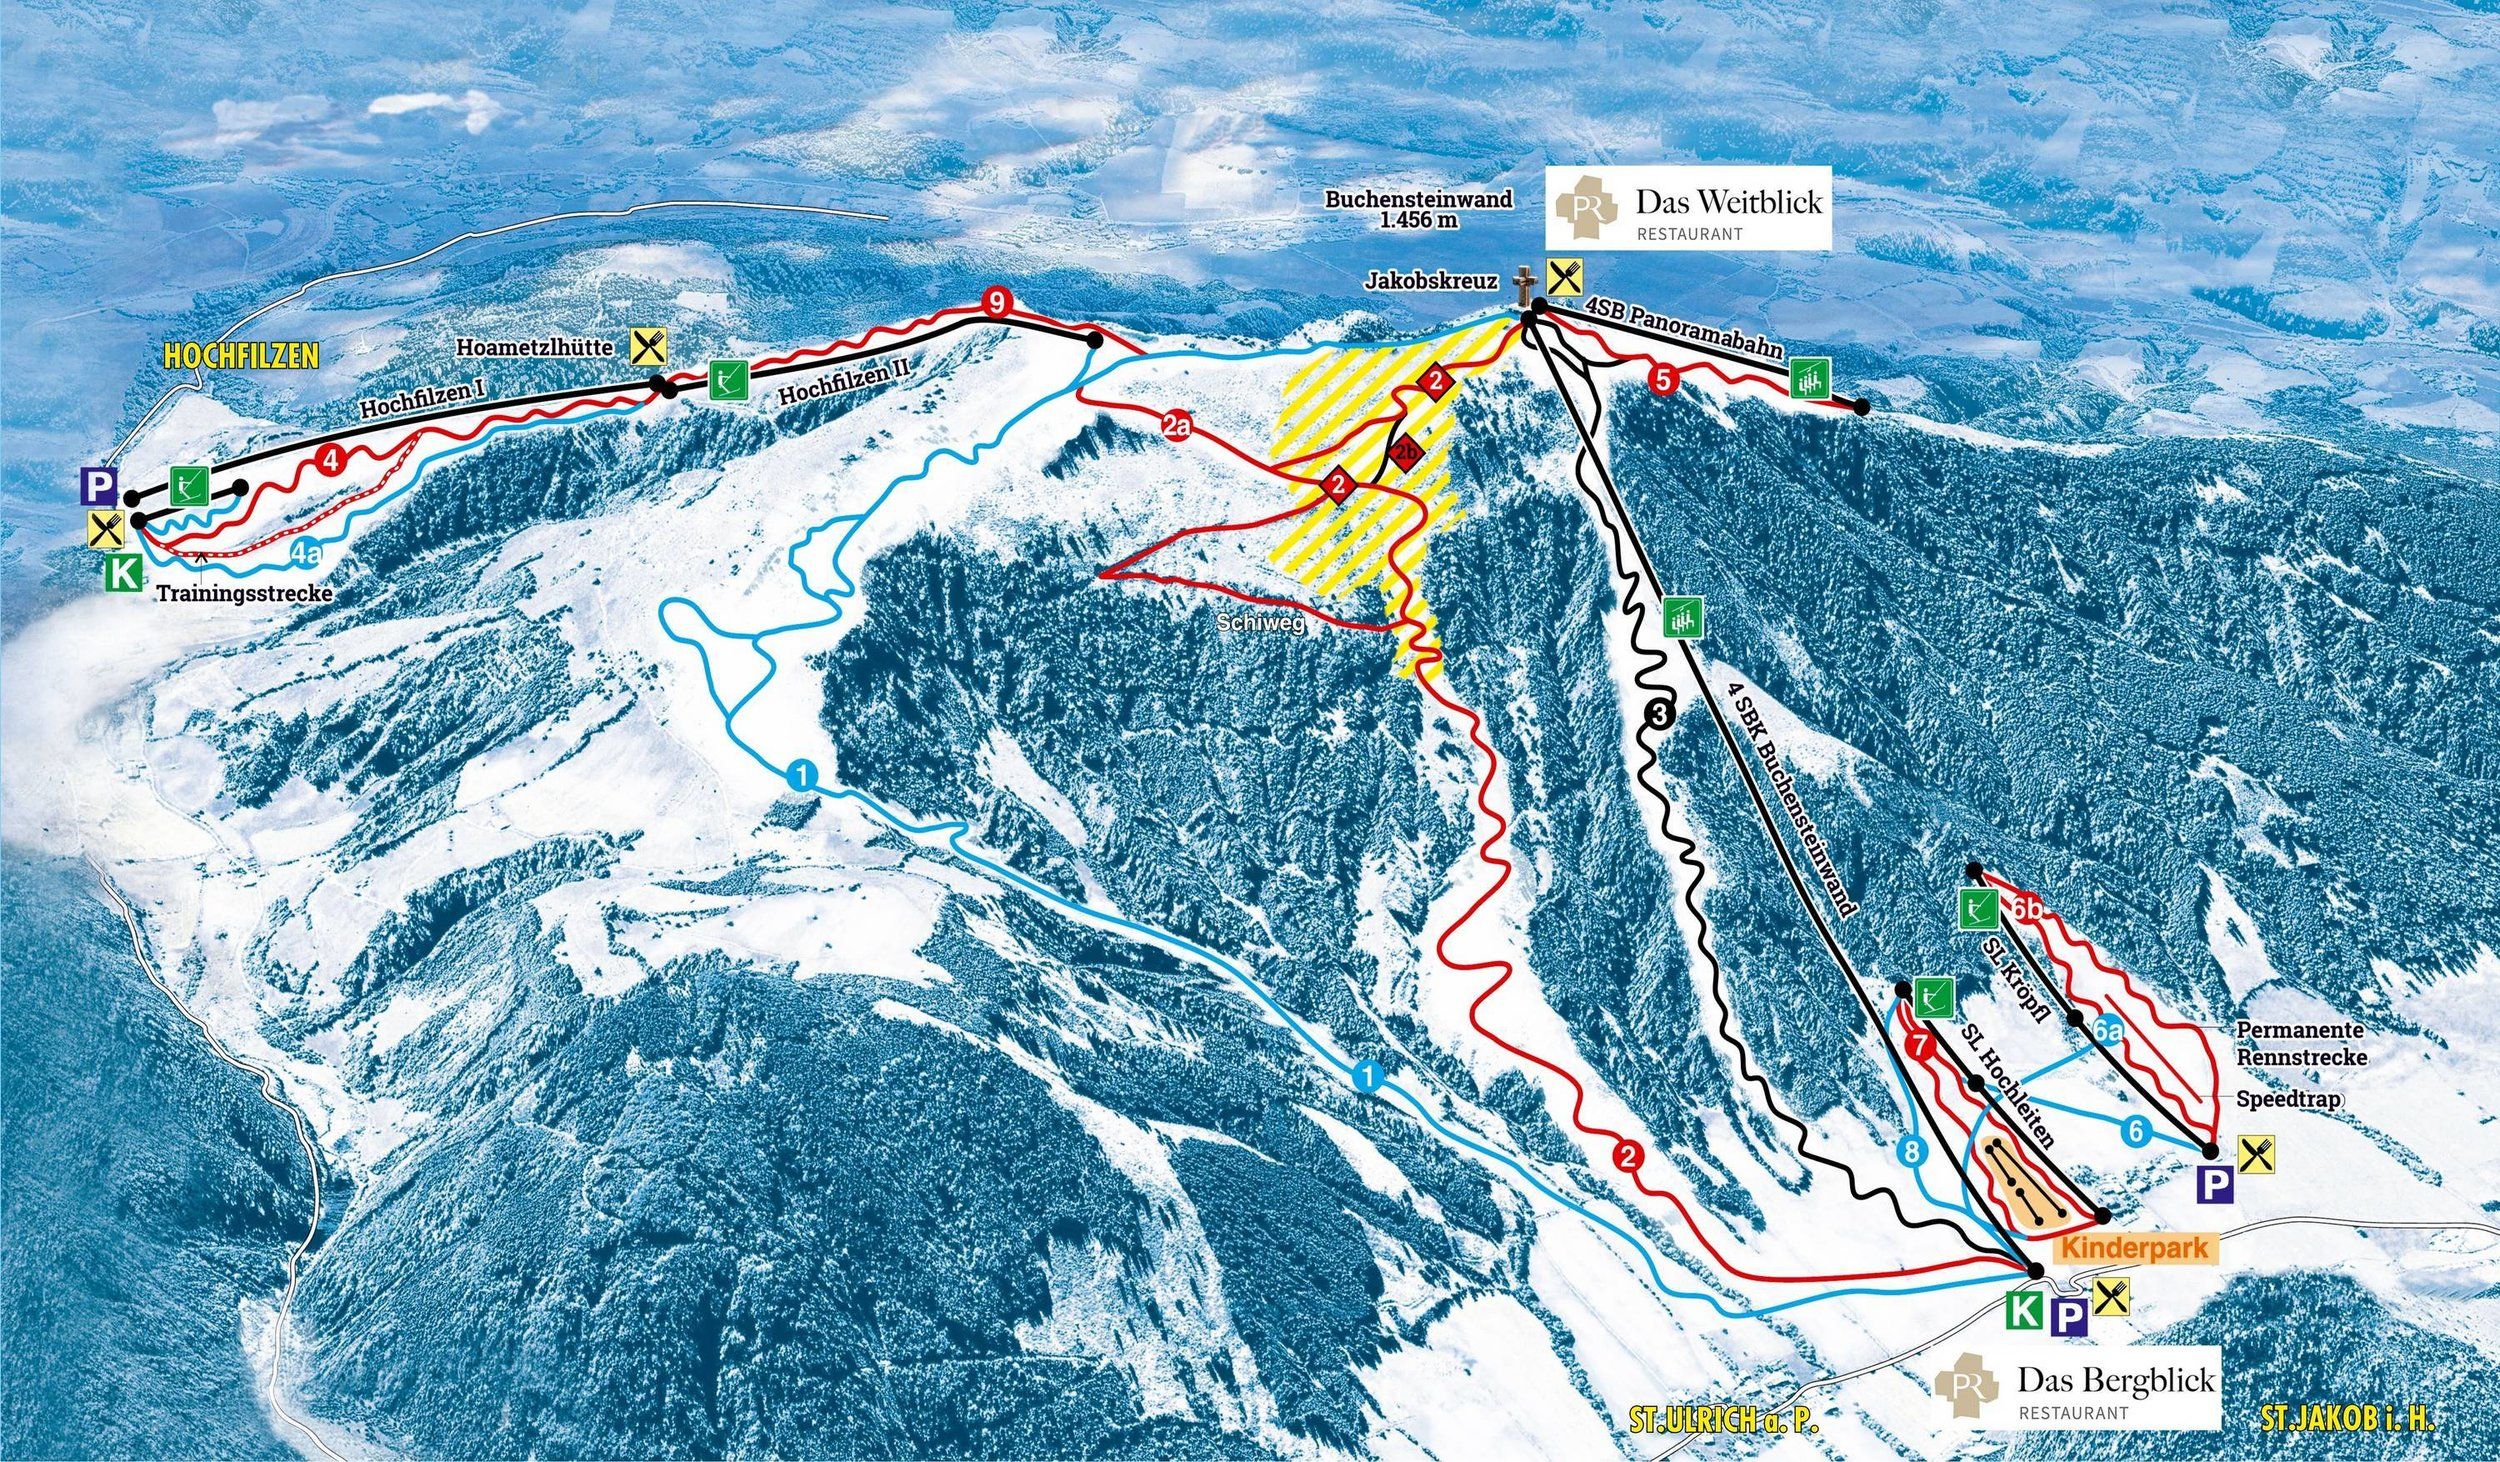 Pistenplan / Karte Skigebiet Hochfilzen, Österreich